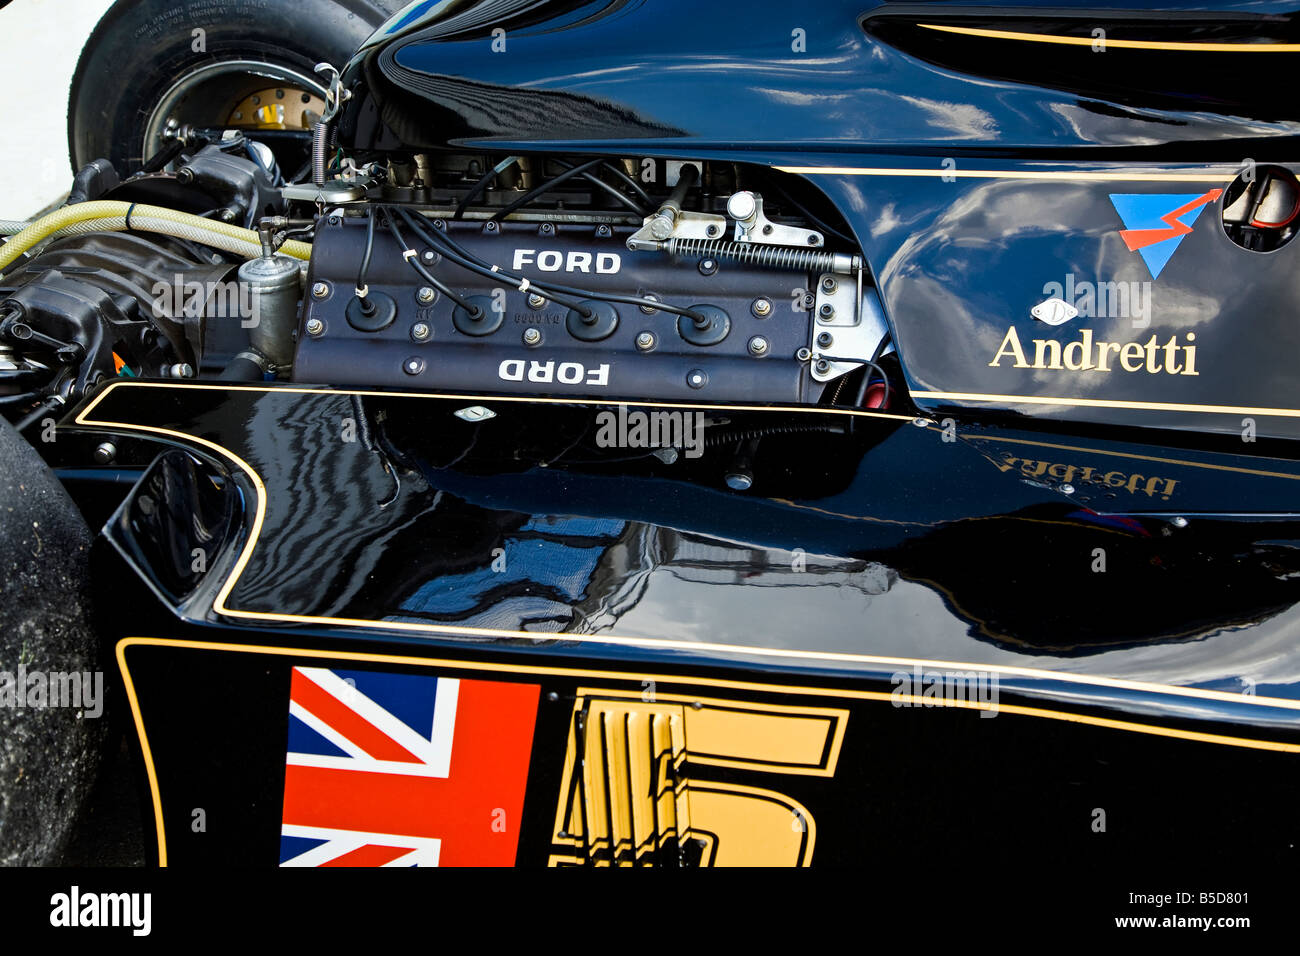 Ford F1-Motor auf einem historischen Lotus 77 Formel 1 grand Prix Auto. Stockfoto